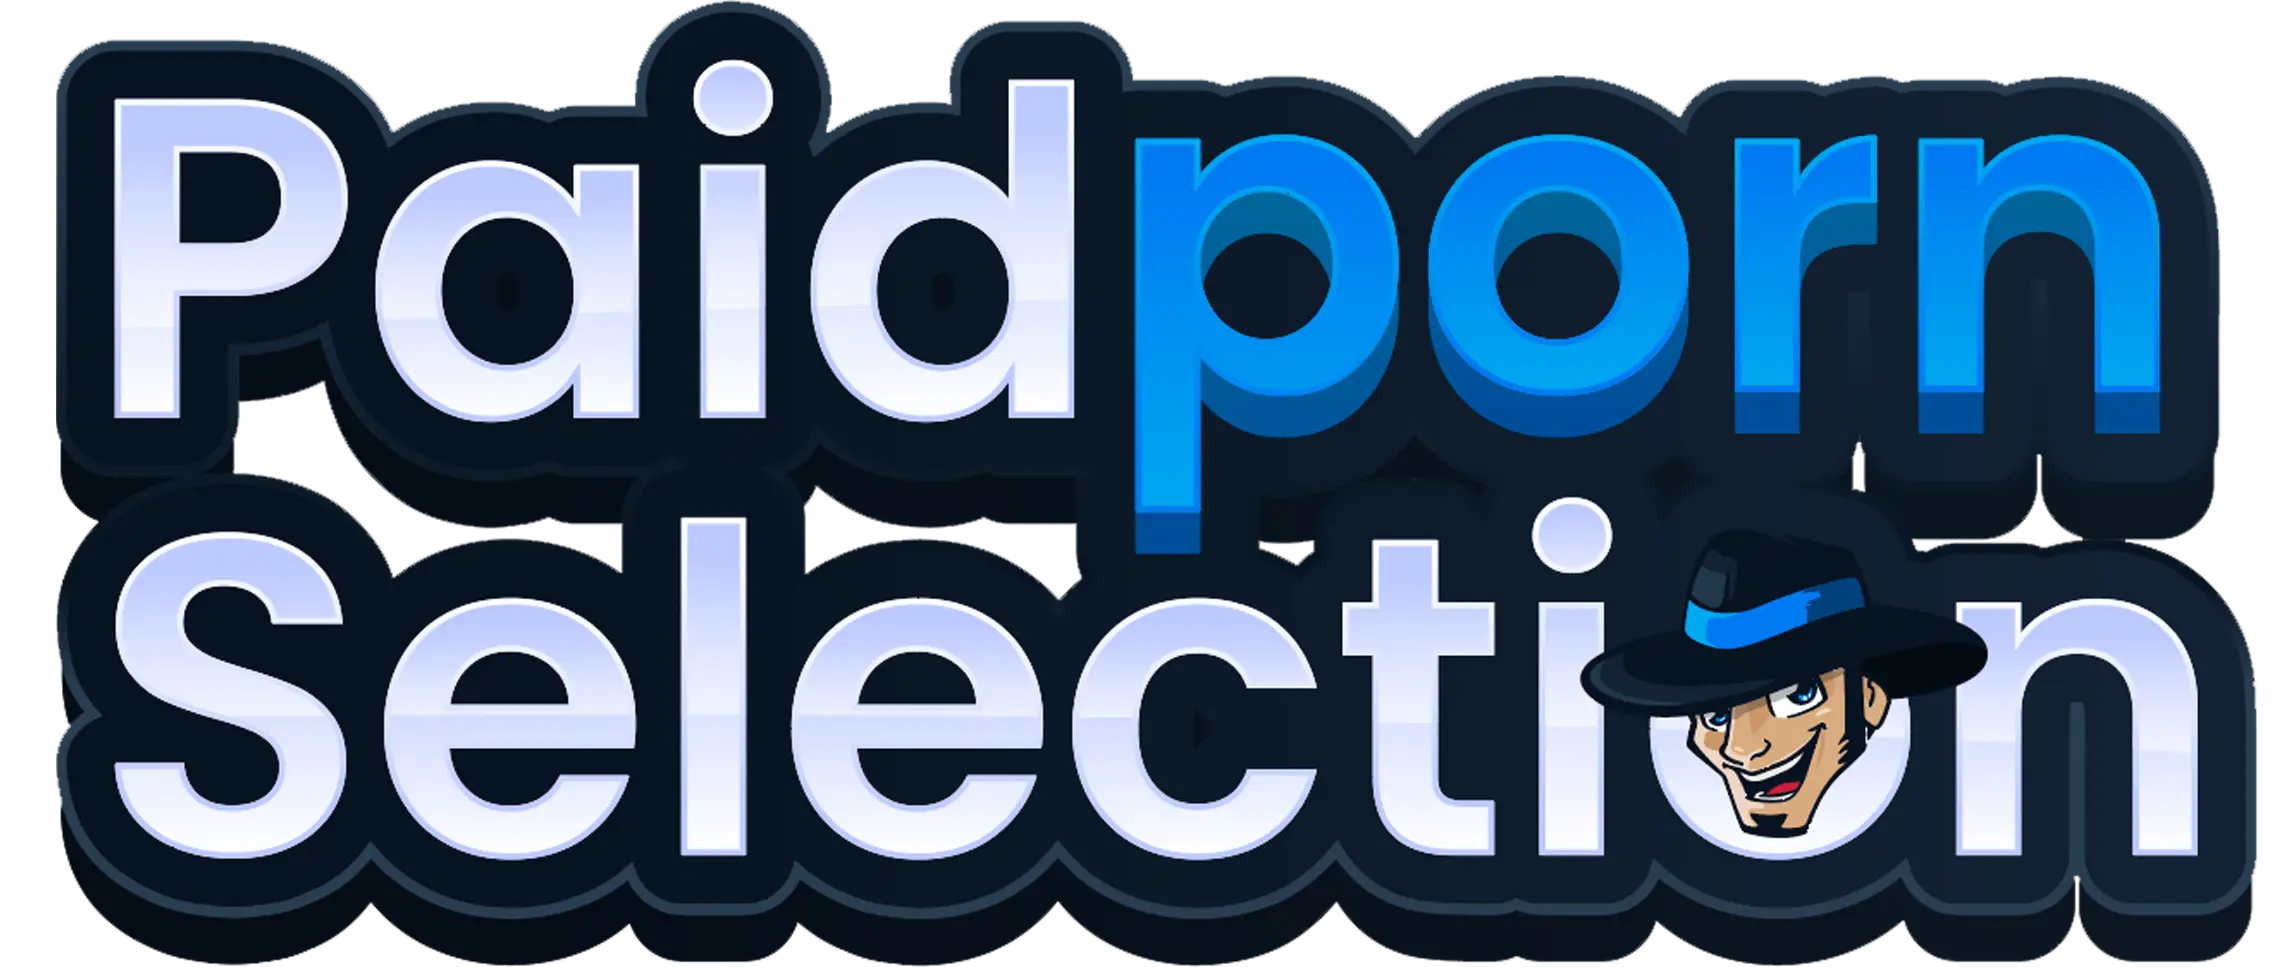 paidpornselection-logo